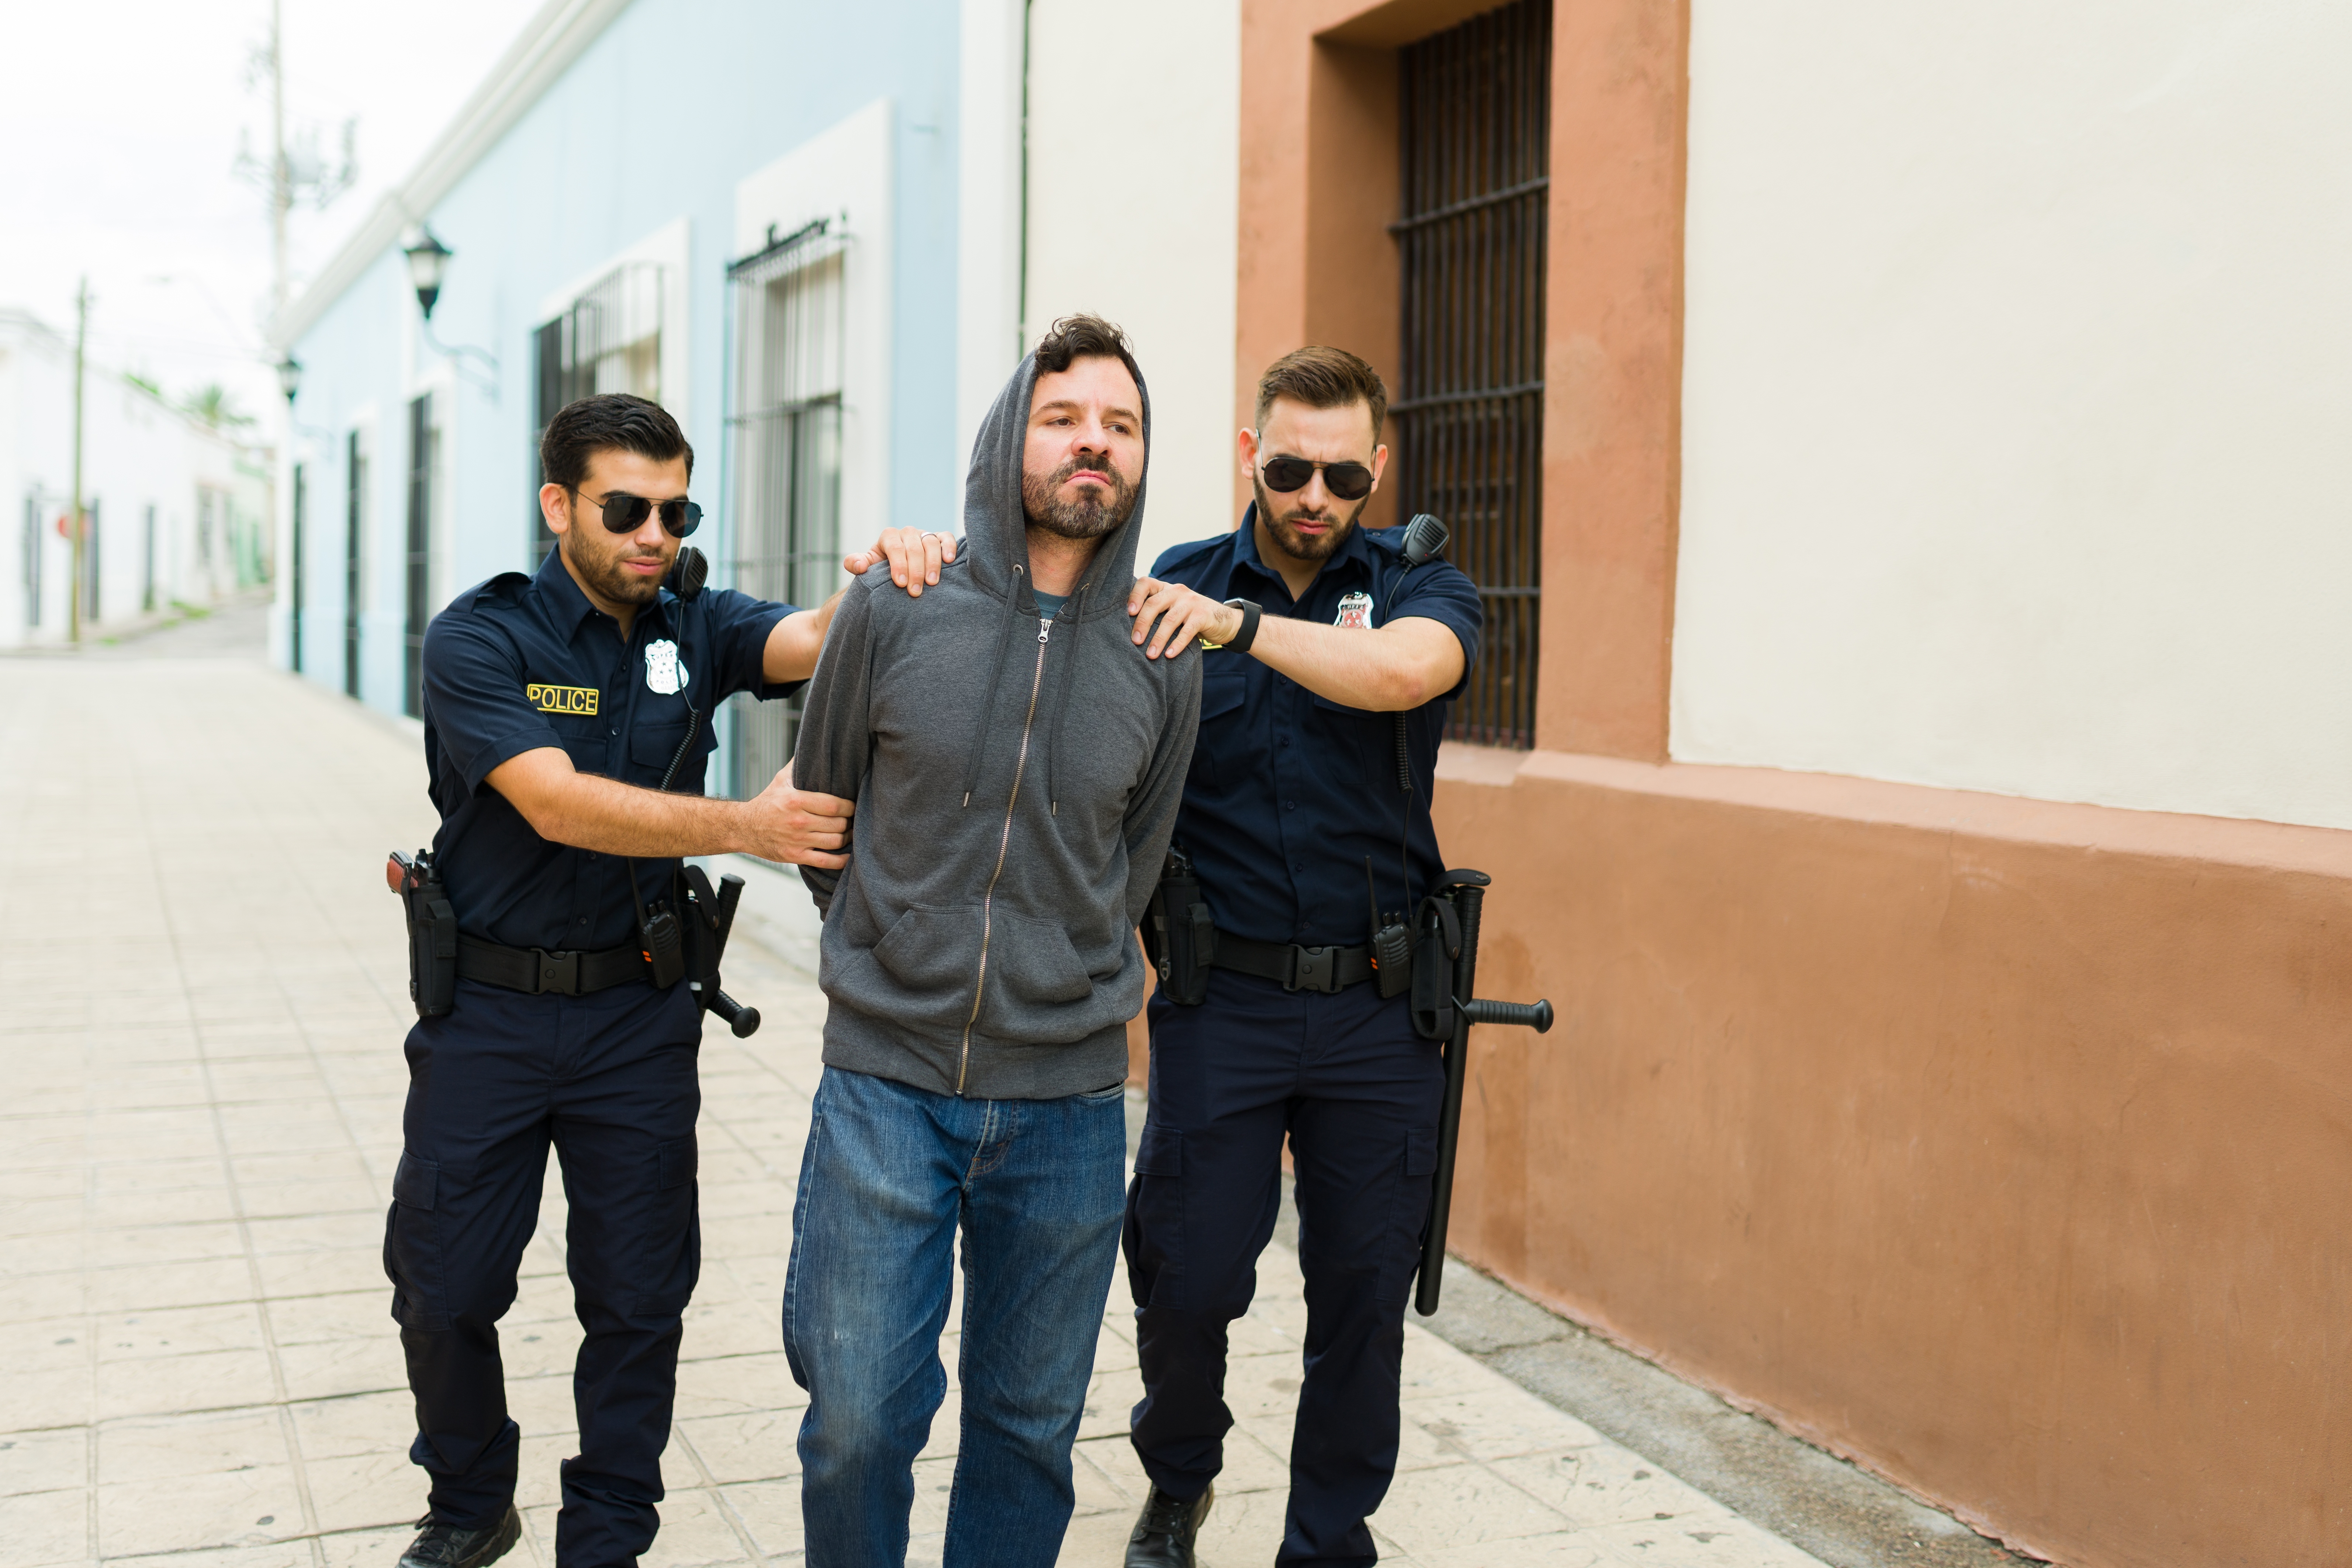 Delincuente violento con capucha siendo detenido por la policía | Fuente: Shutterstock.com